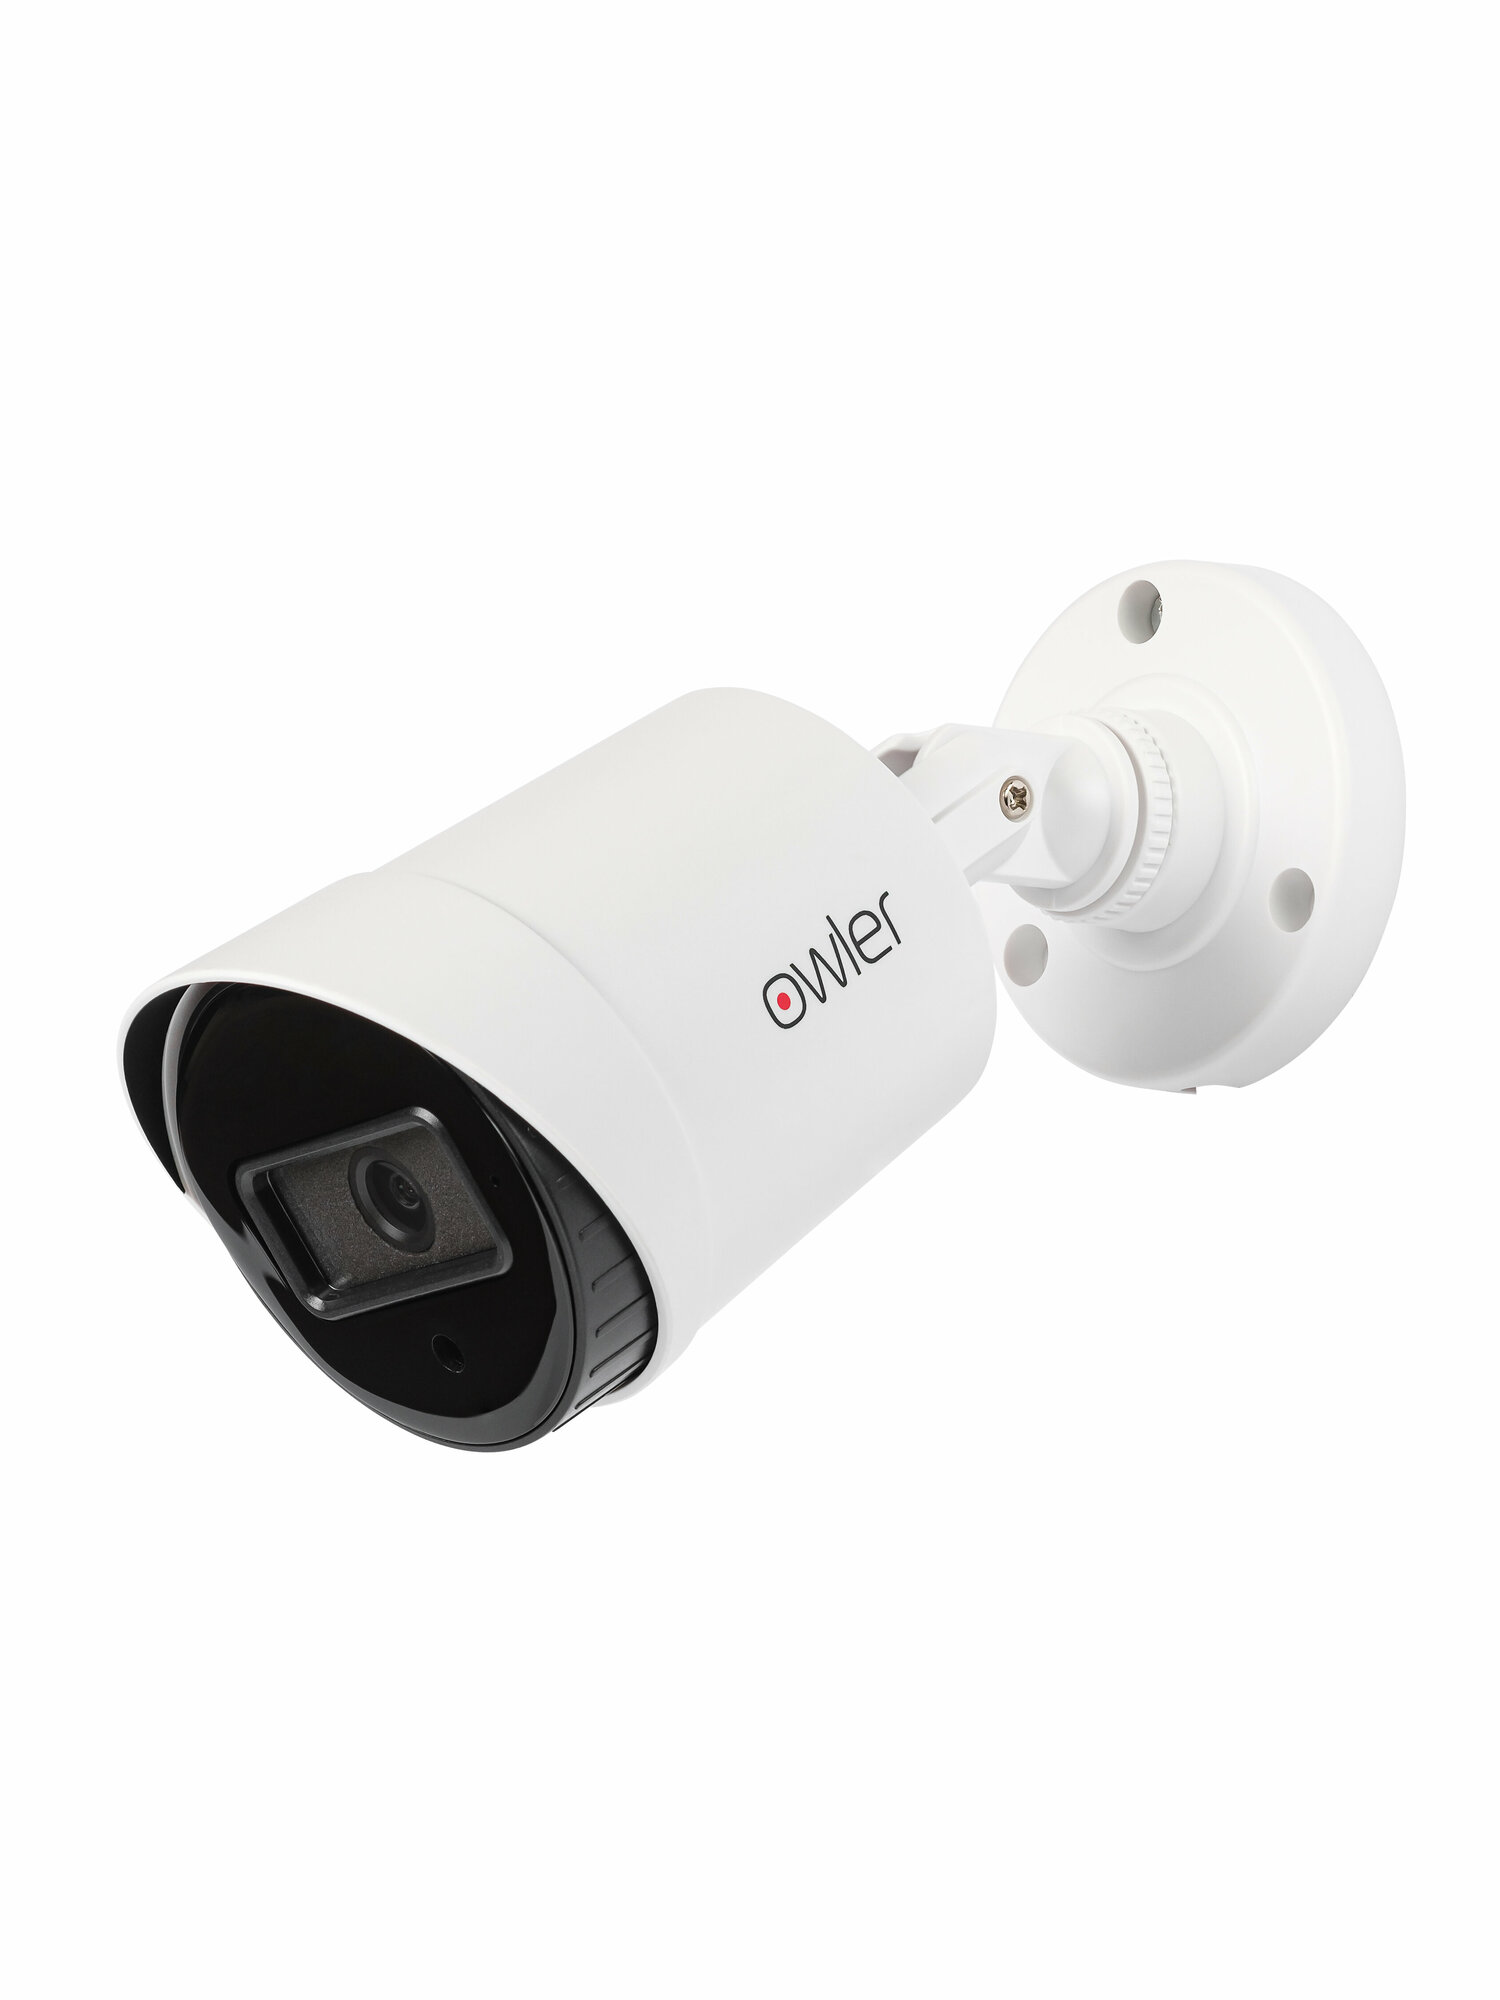 Комплект видеонаблюдения Owler 5MP-4 Уличный 4 камеры 5Мп + видеорегистратор